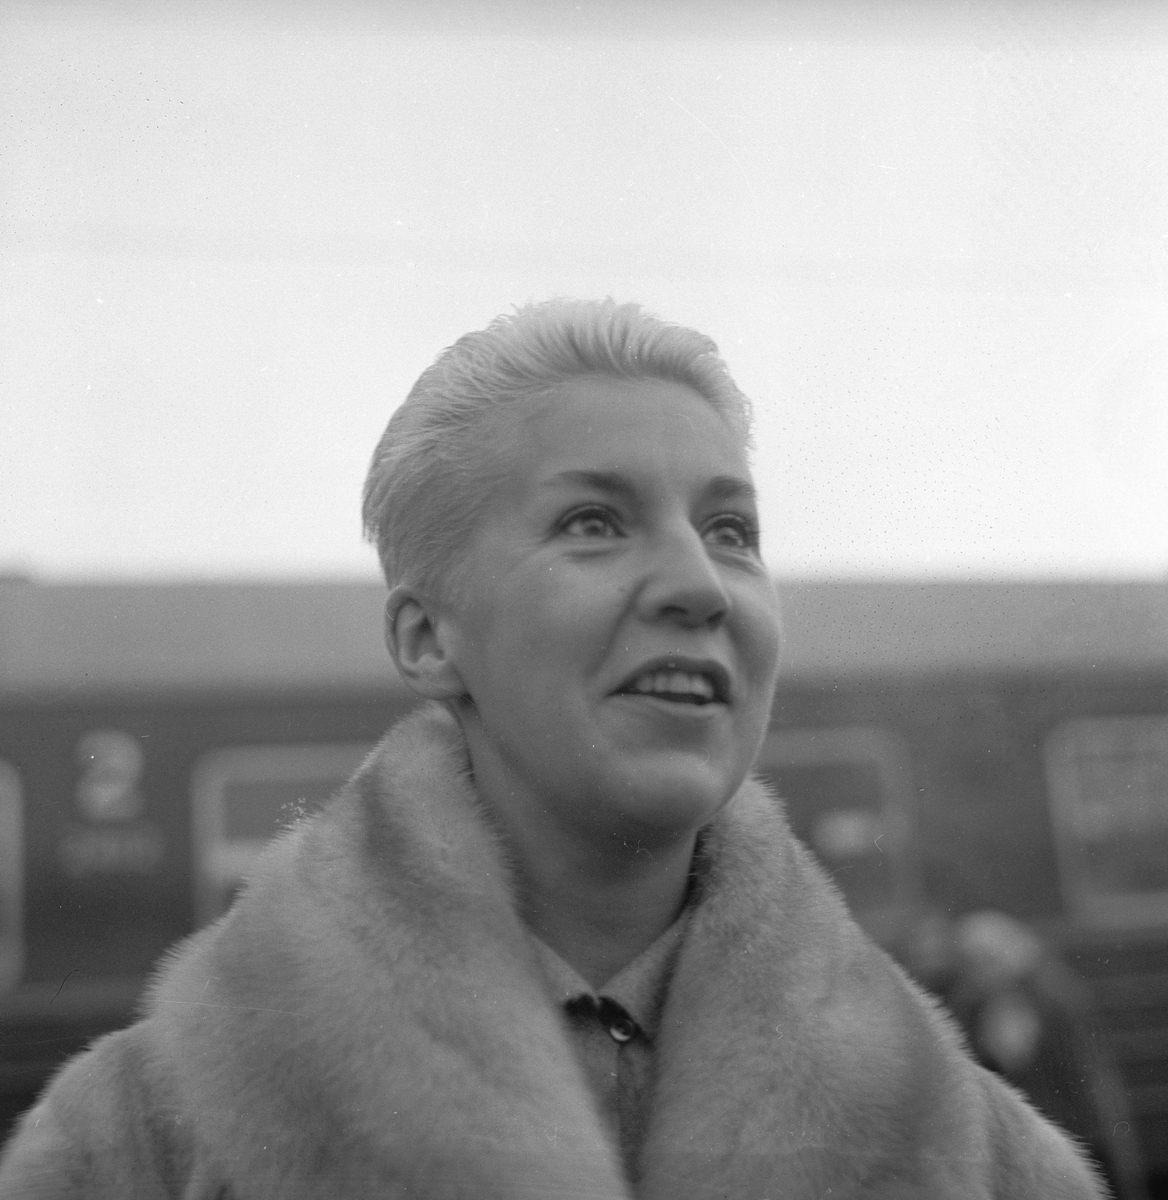 Svensk operagjestespill "Aniara". Kjersti Dellert. Fotografert 30.10.1960.